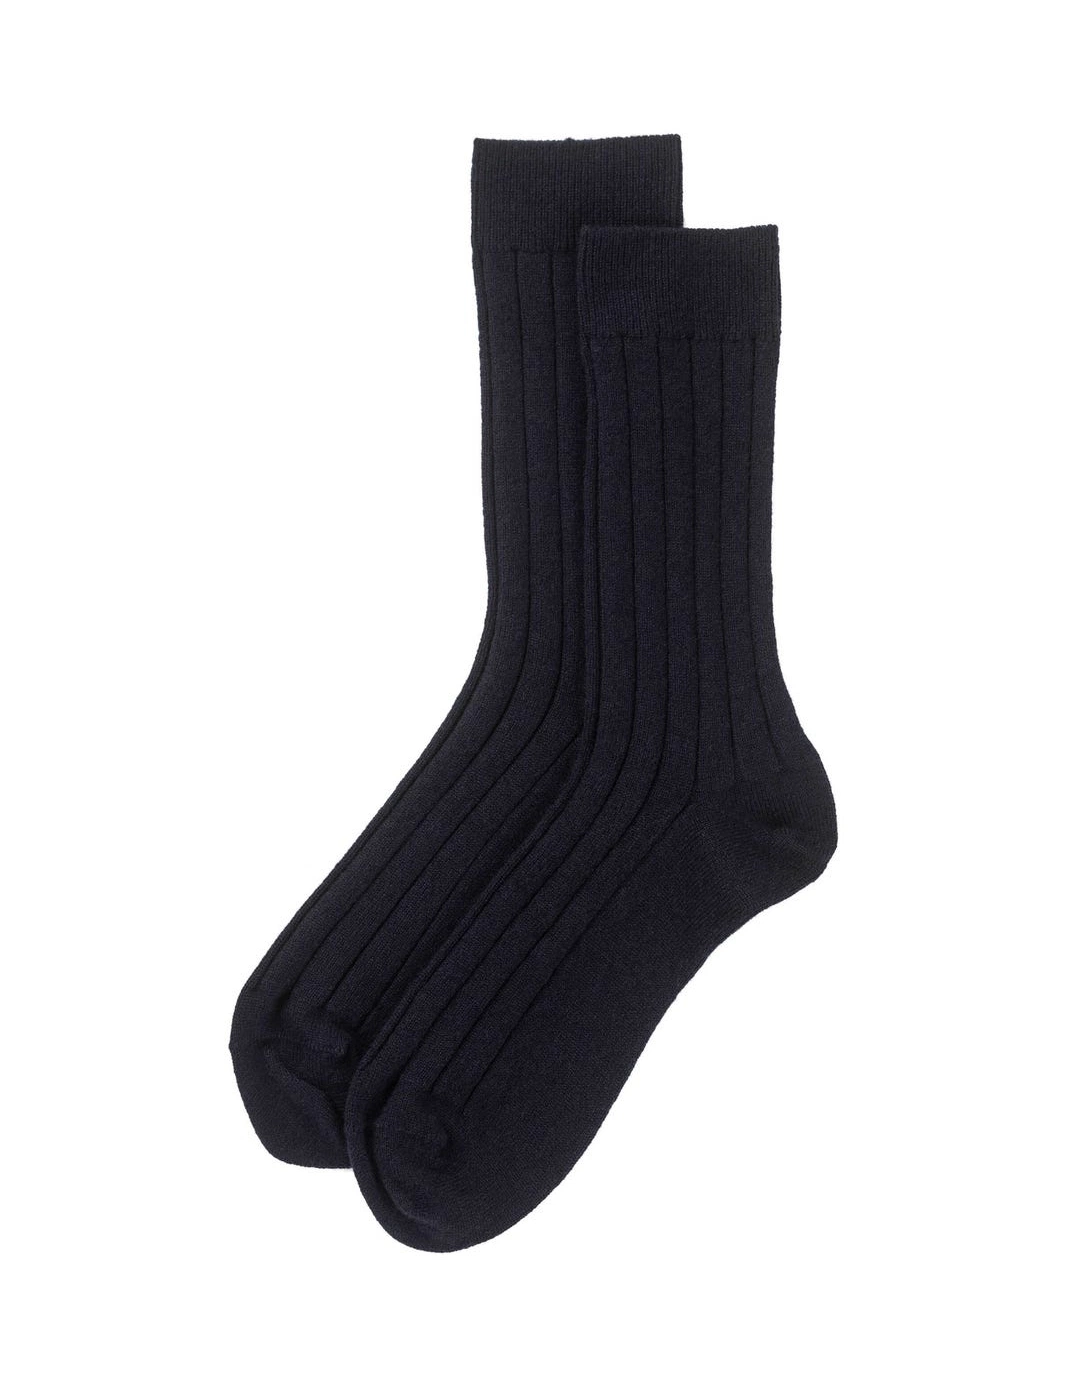 Мужские носки′ S 100% Cashmere Rib Одежда Аксессуары